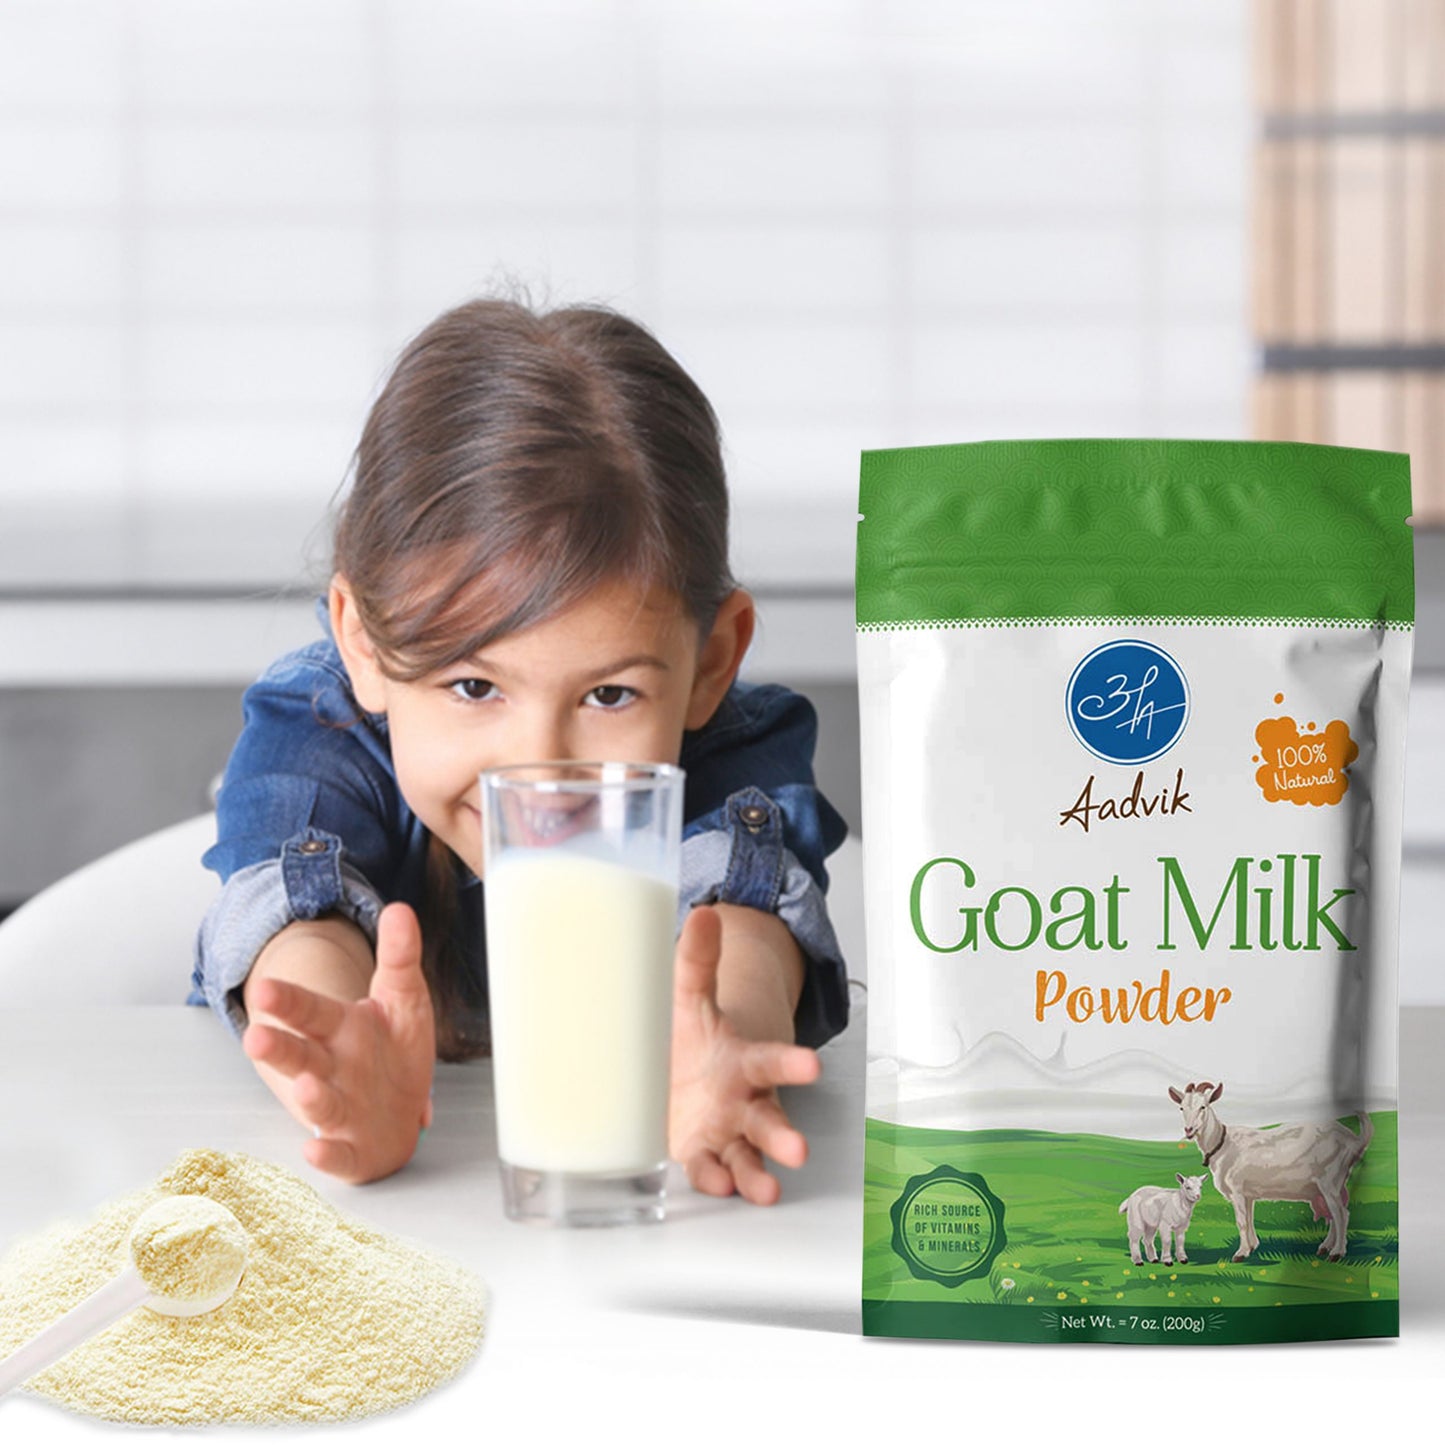 Goat Milk Powder | Freeze Dried